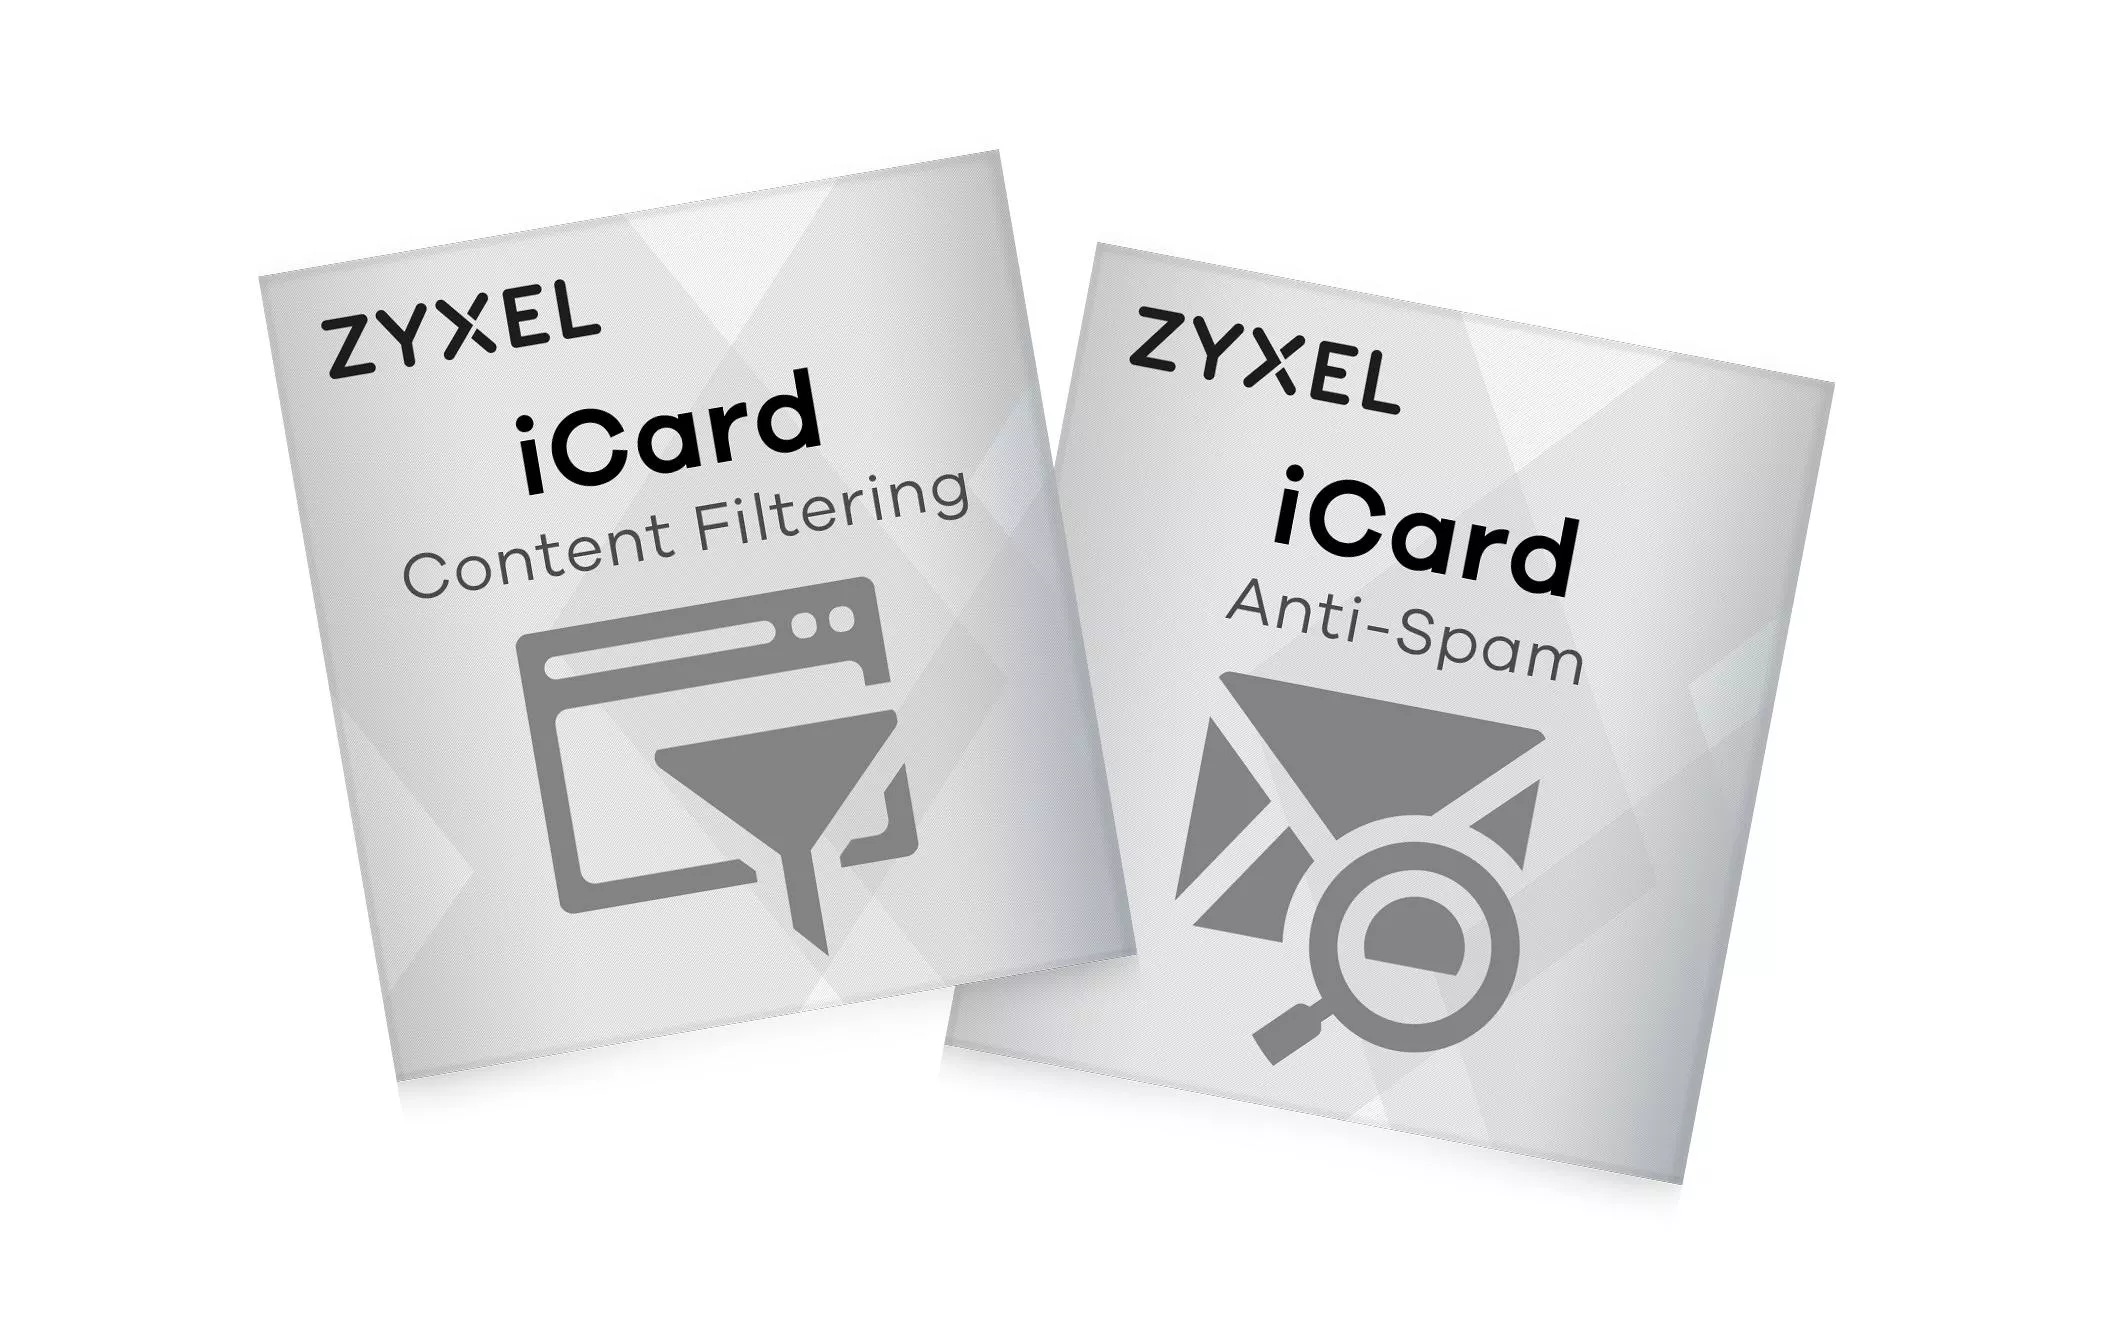 Lizenz iCard CF & Anti-Spam für USG FLEX 500 1 Jahr